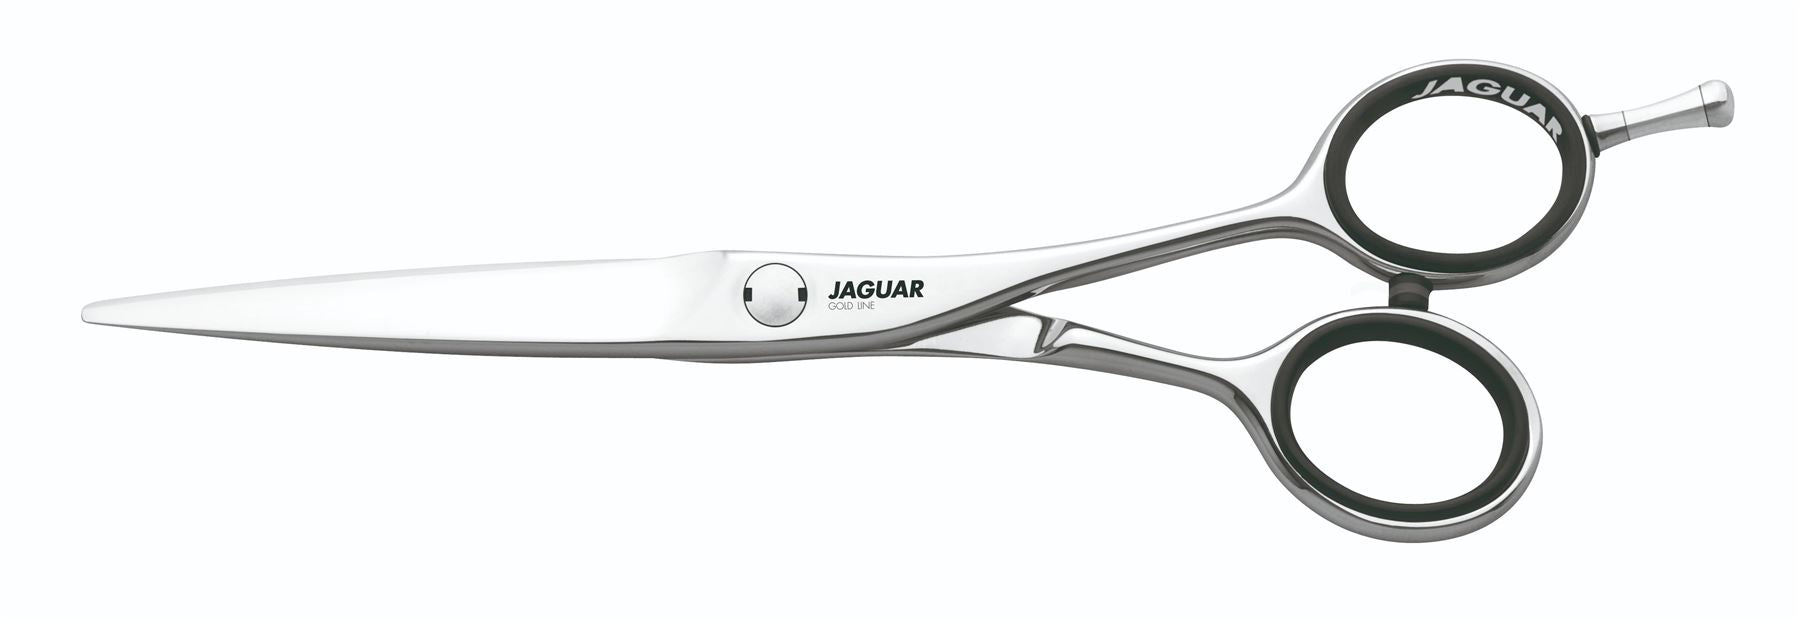 Jaguar Dynasty E Offset 5.25" Hairdressing Scissors - Vanadium Steel